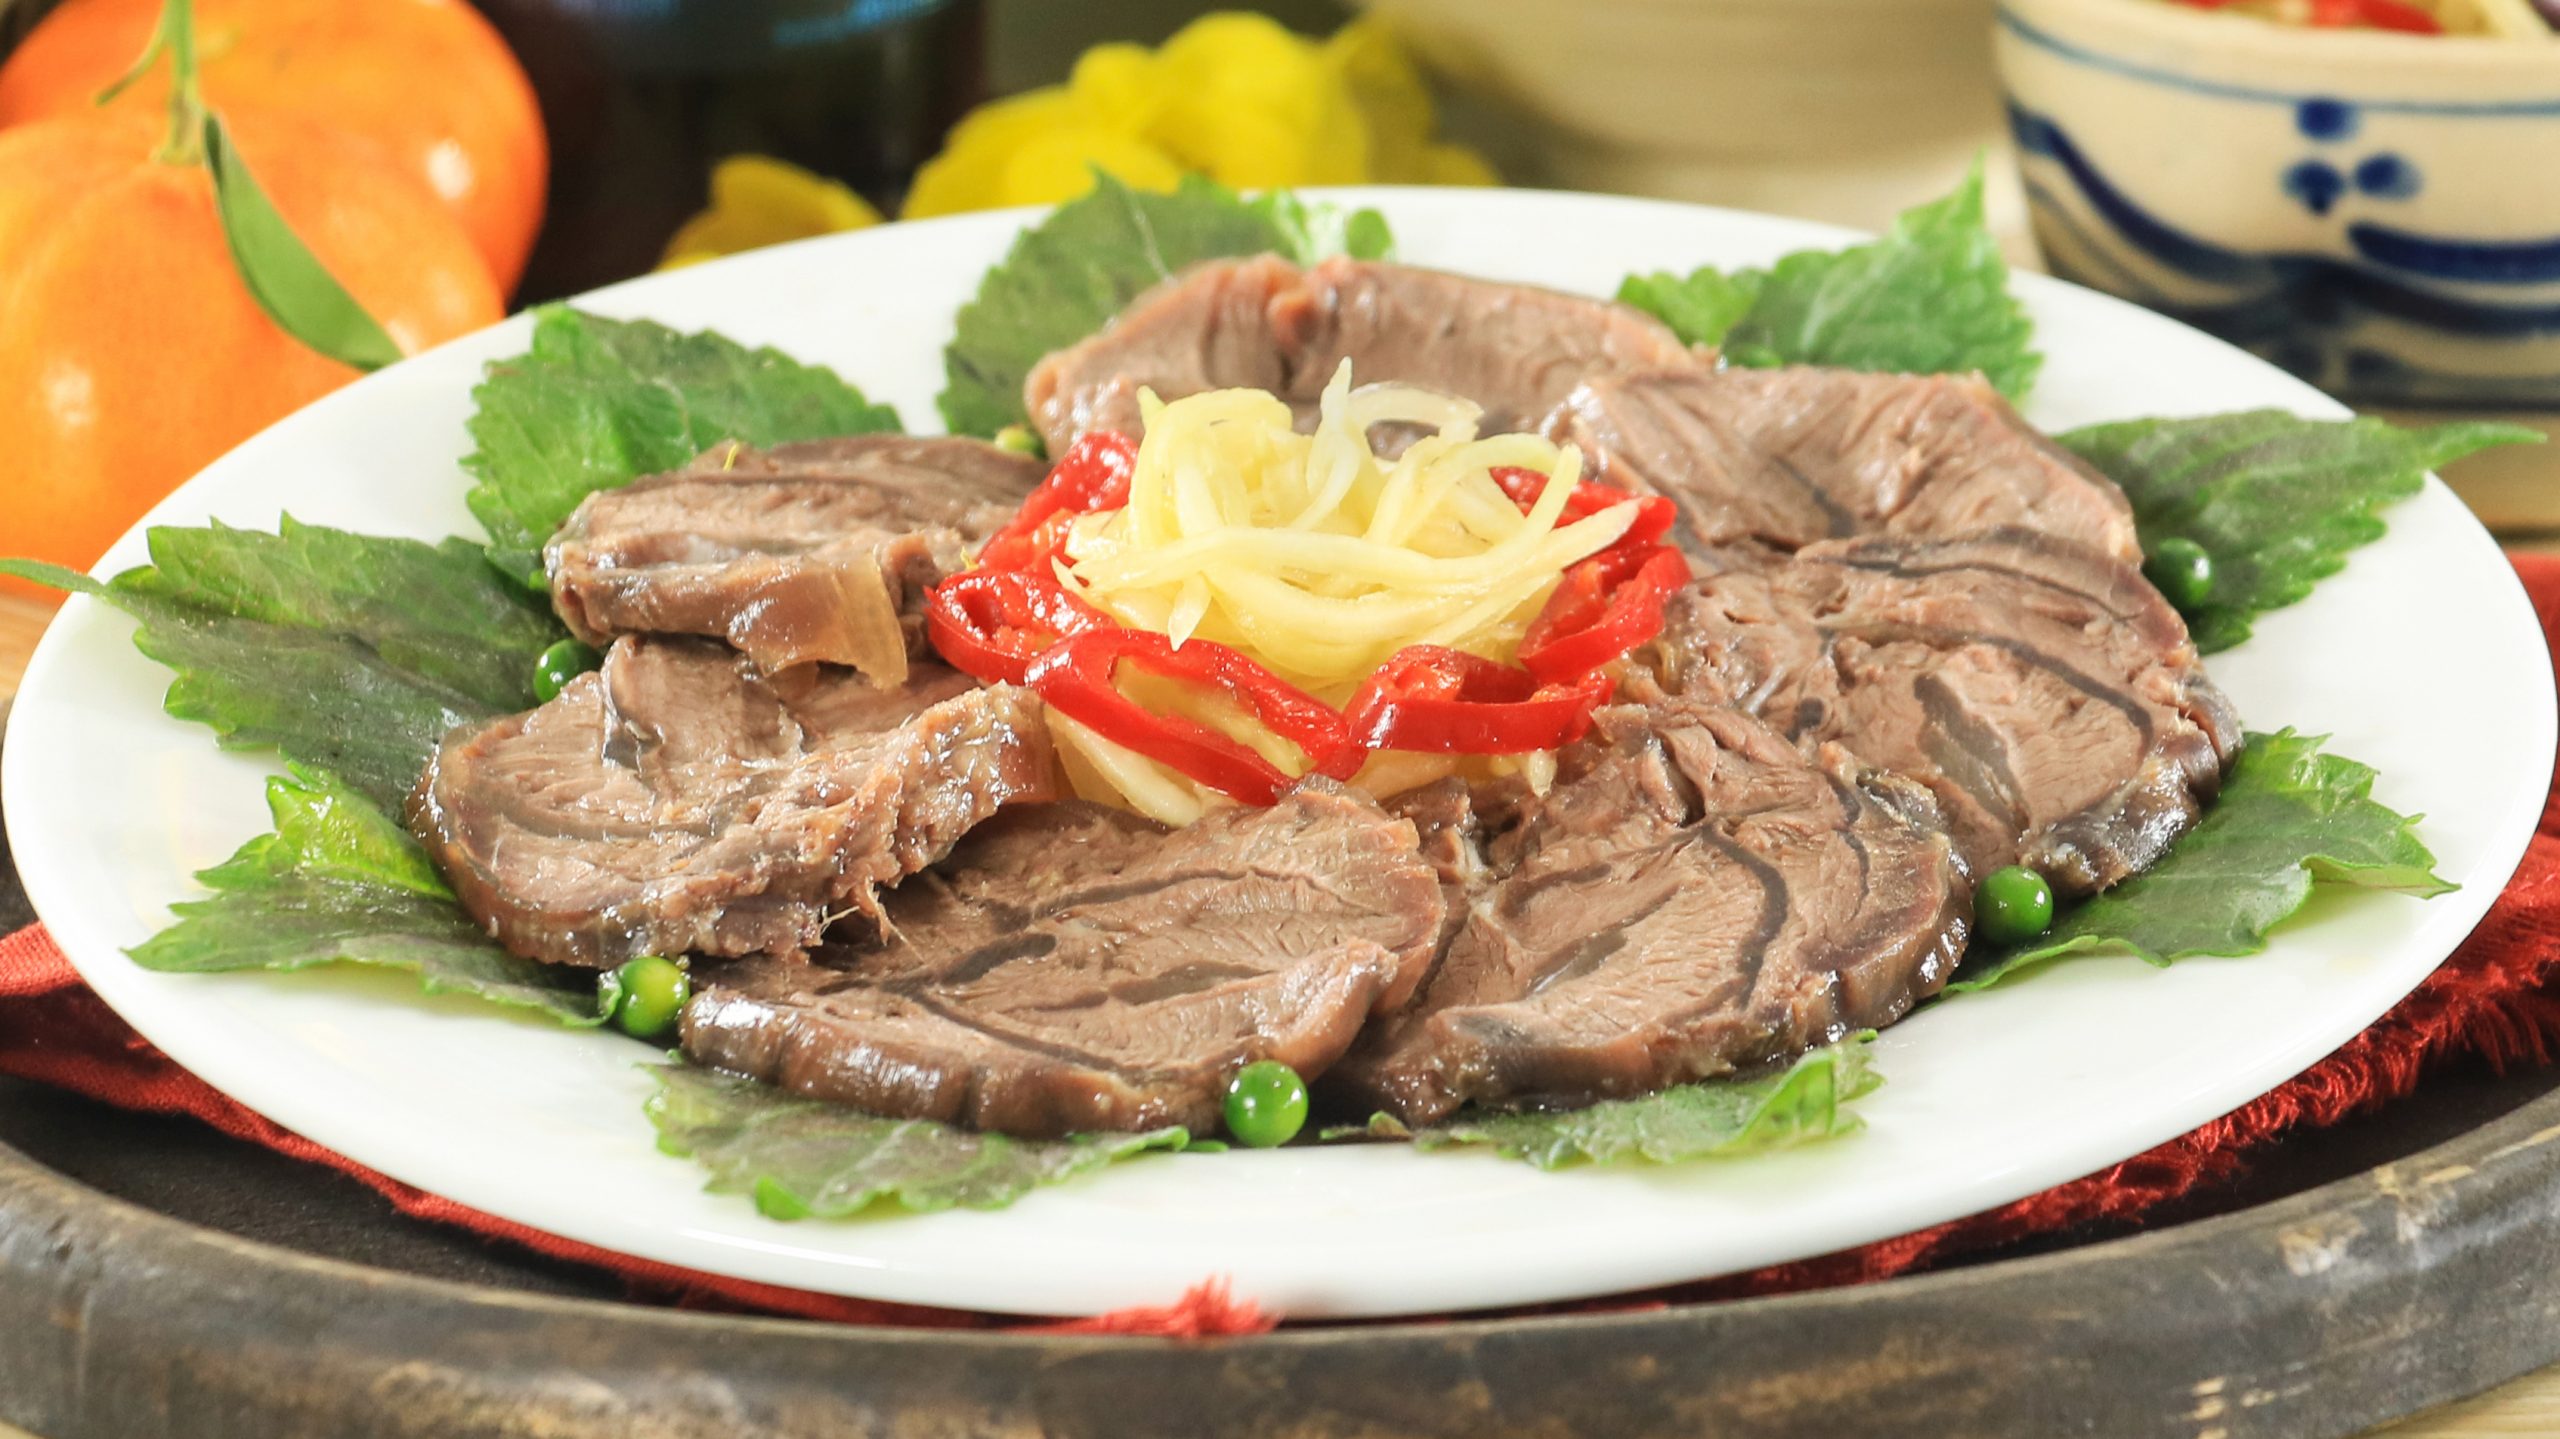 Thịt bò luộc là món ăn đơn giản, giàu dinh dưỡng rất thích hợp cho người đang giảm cân